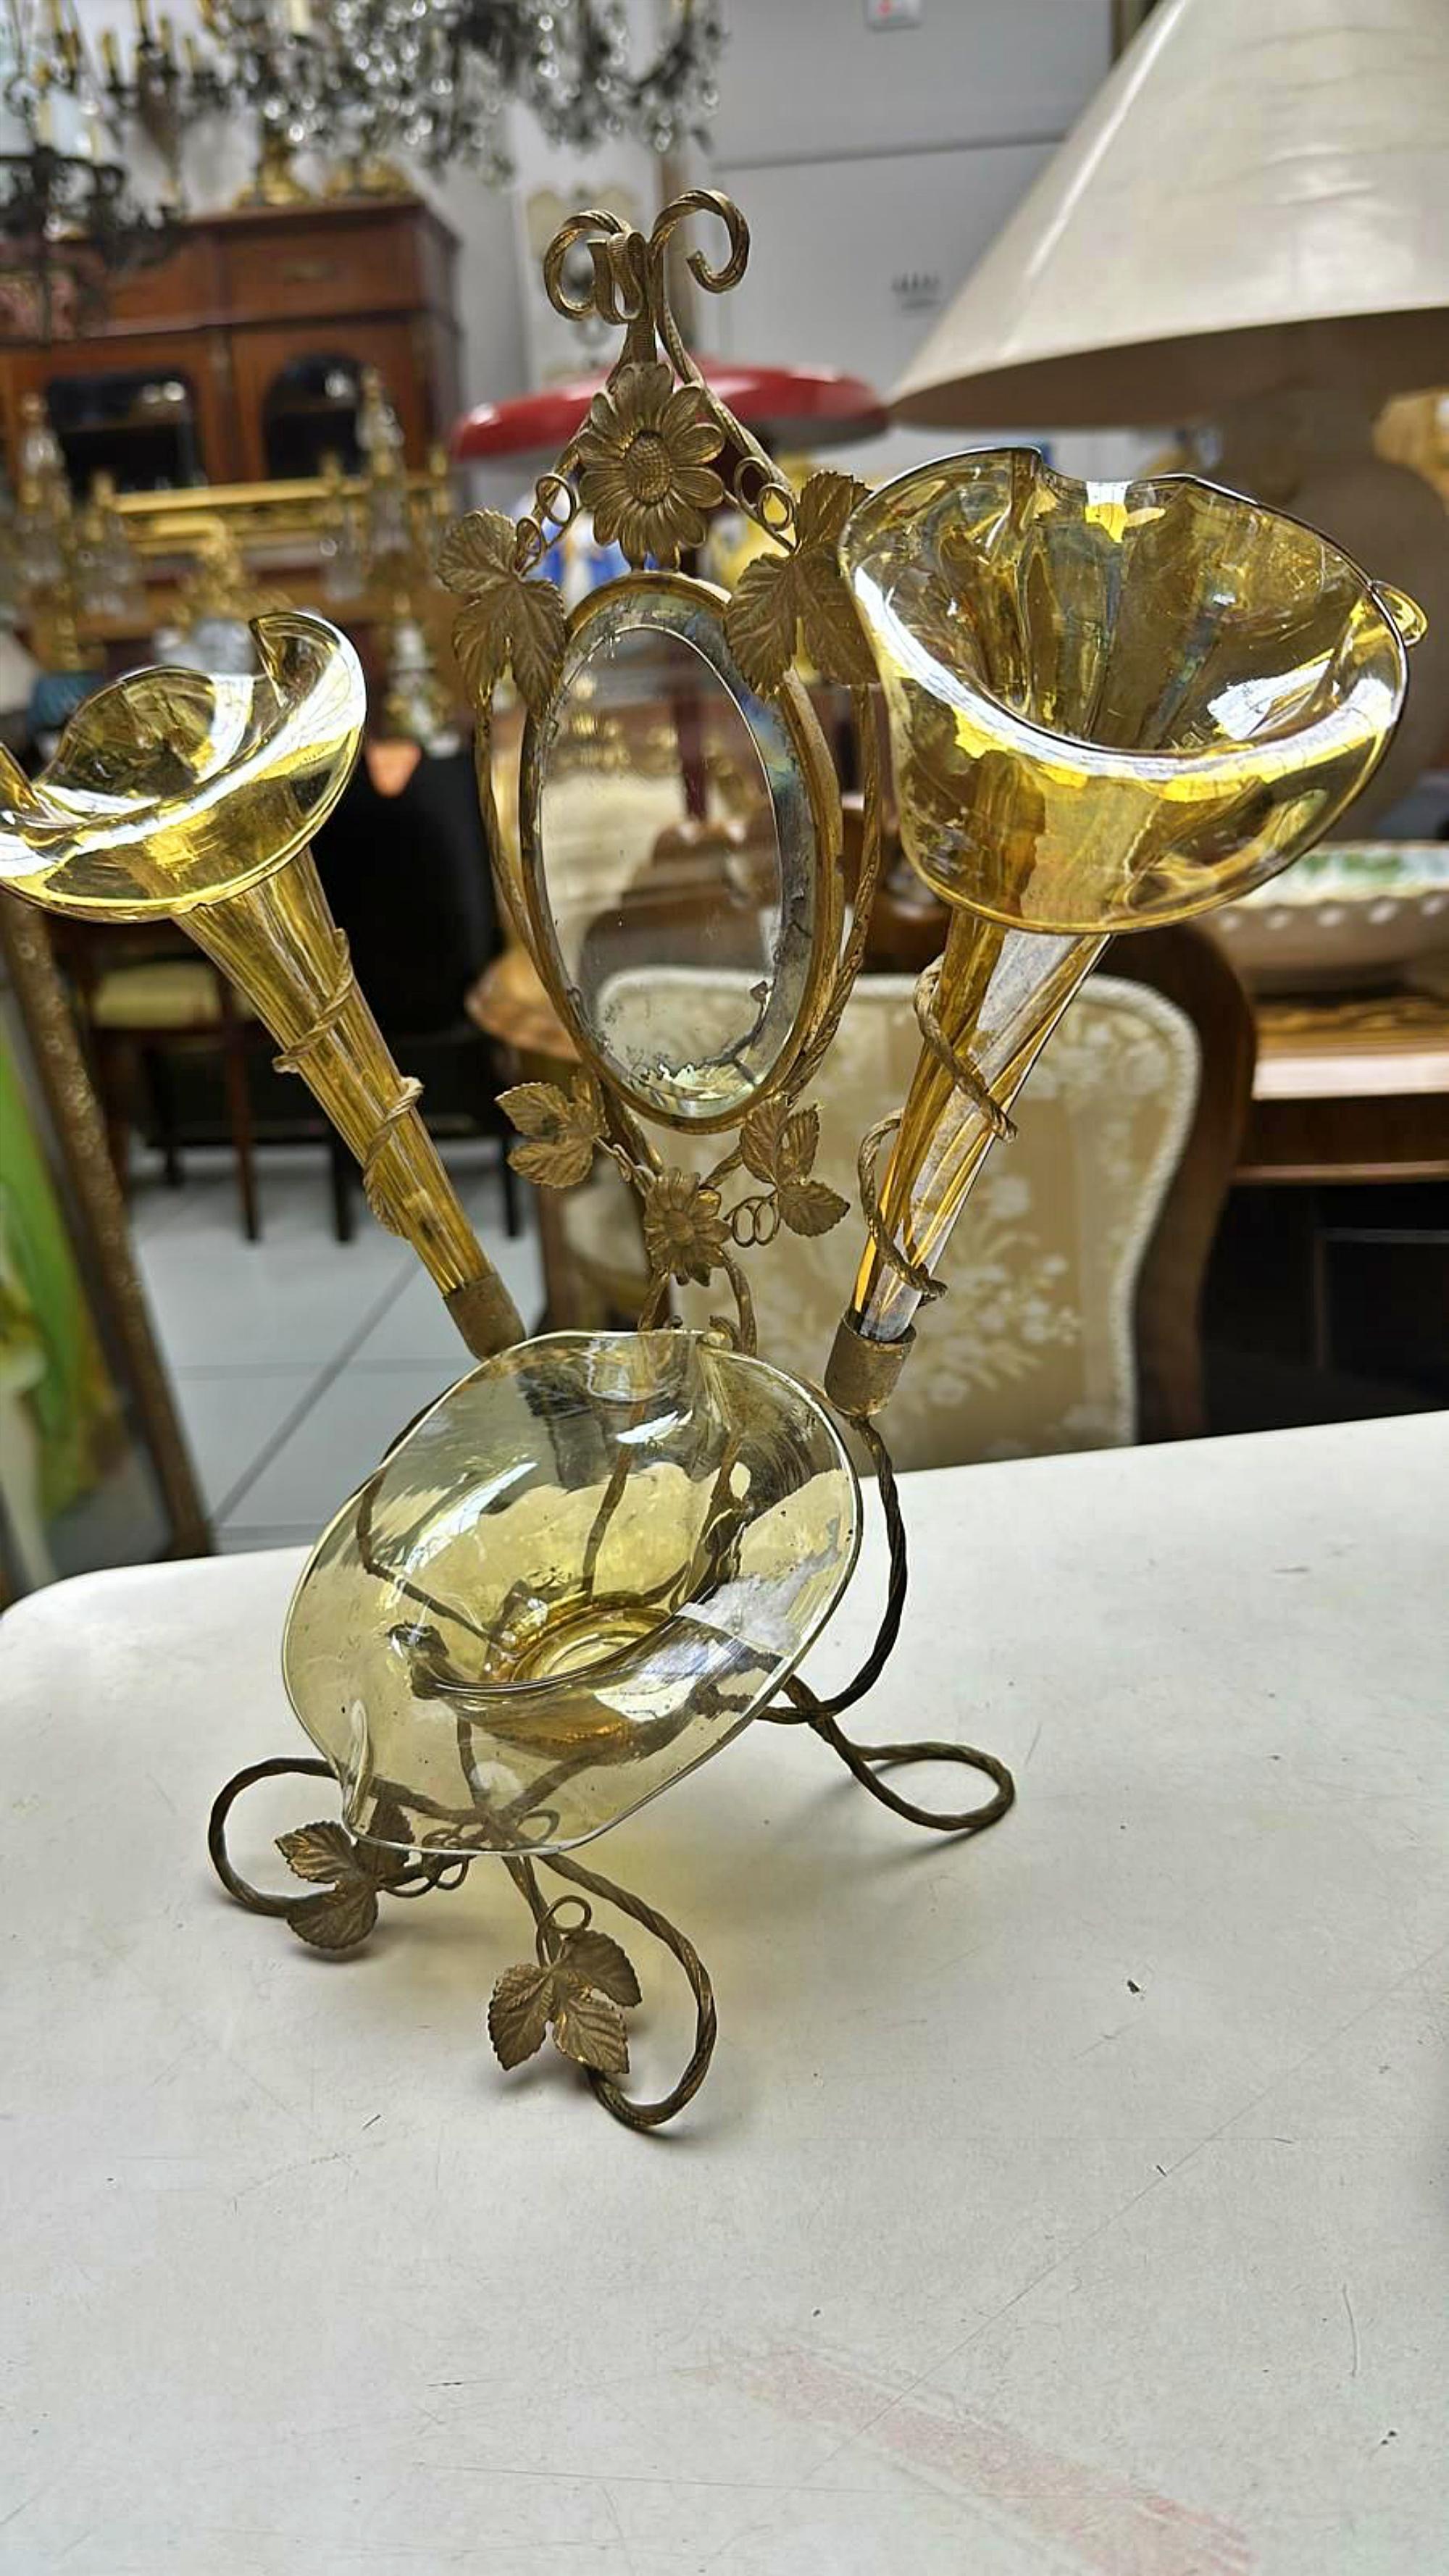 Prächtiger Blumenhalter aus italienischem Murano-Glas aus dem 19.
Art Deco
aus Messing mit Spiegel und Gläsern aus Murano-Glas,
Glas in Strohfarben
31cm x 32cm
ausgezeichneter Zustand, das Glas ist ohne Brüche oder Kratzer